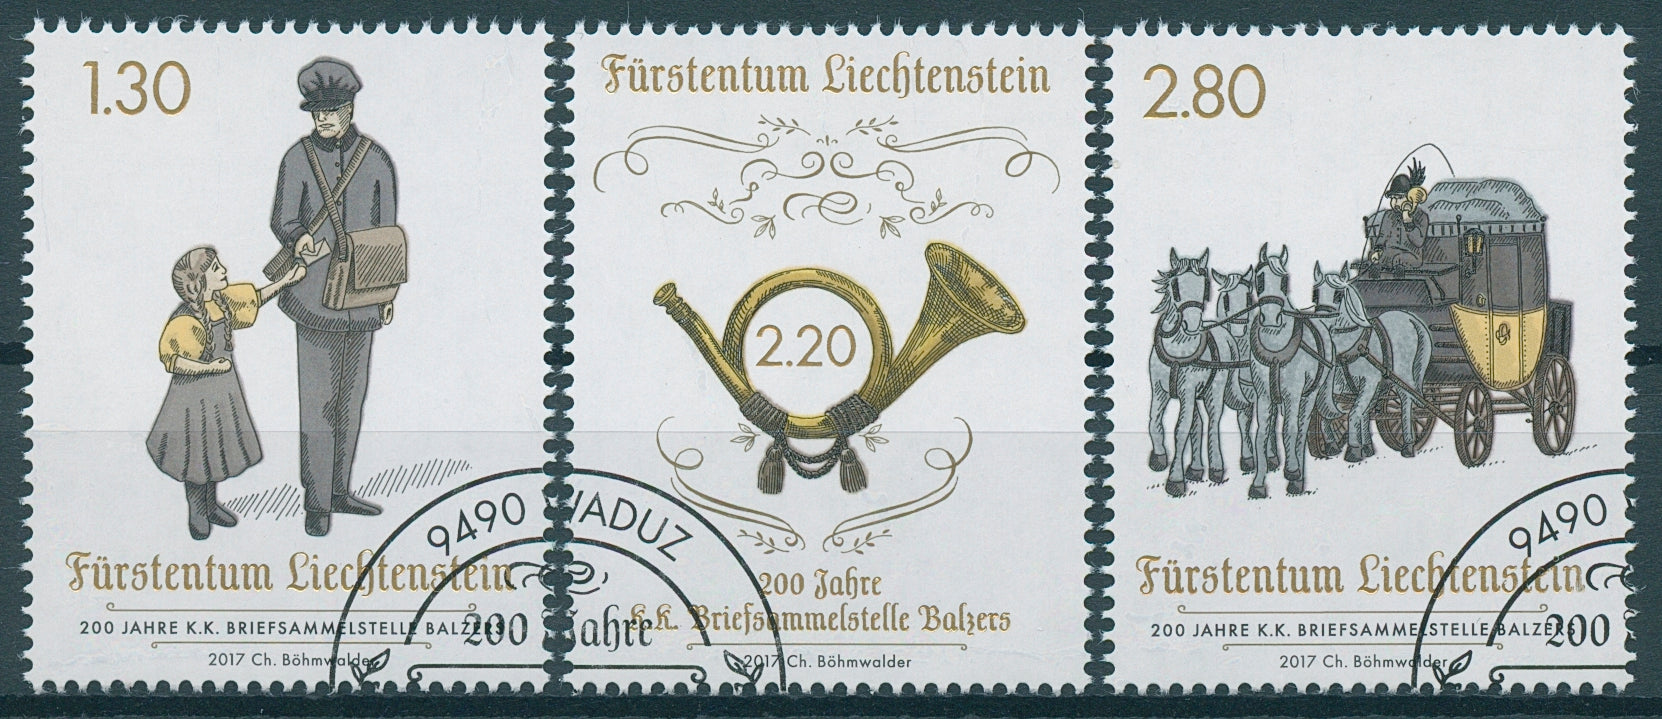 Liechtenstein 2017 CTO Briefsammelstelle Balzers 3v Set Postal Services Stamps